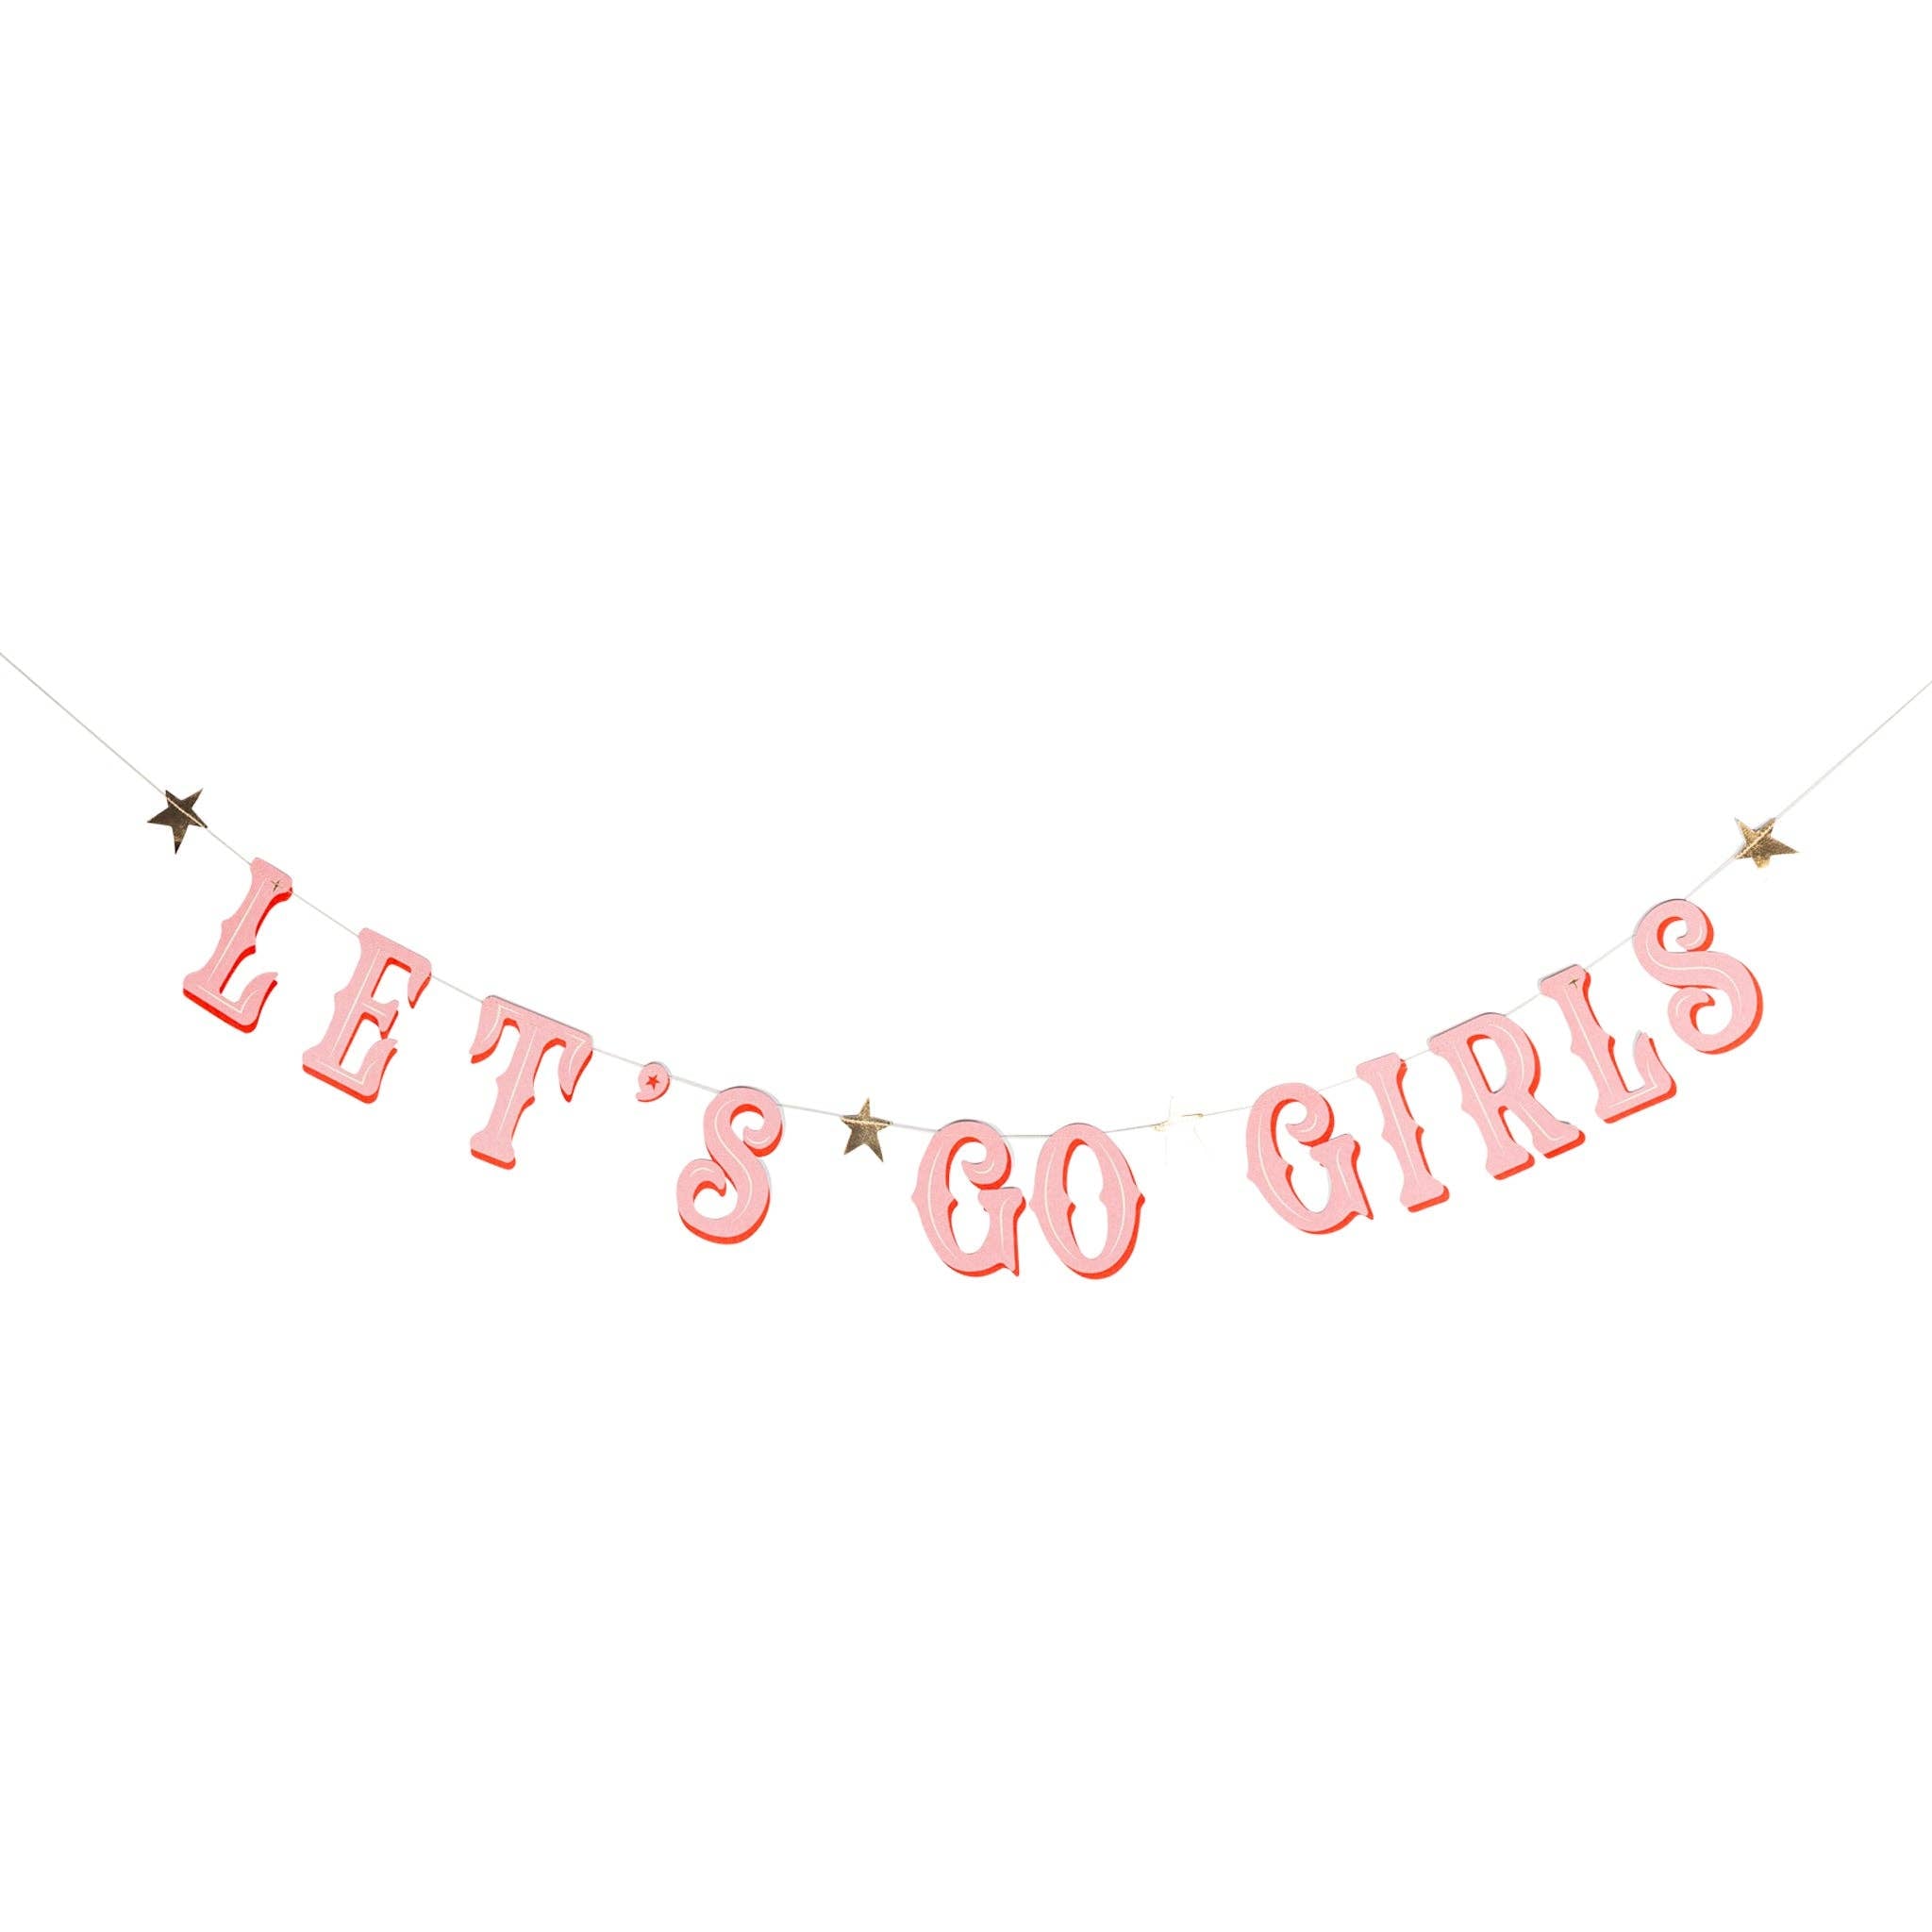 Let's Go Girls Banner Set